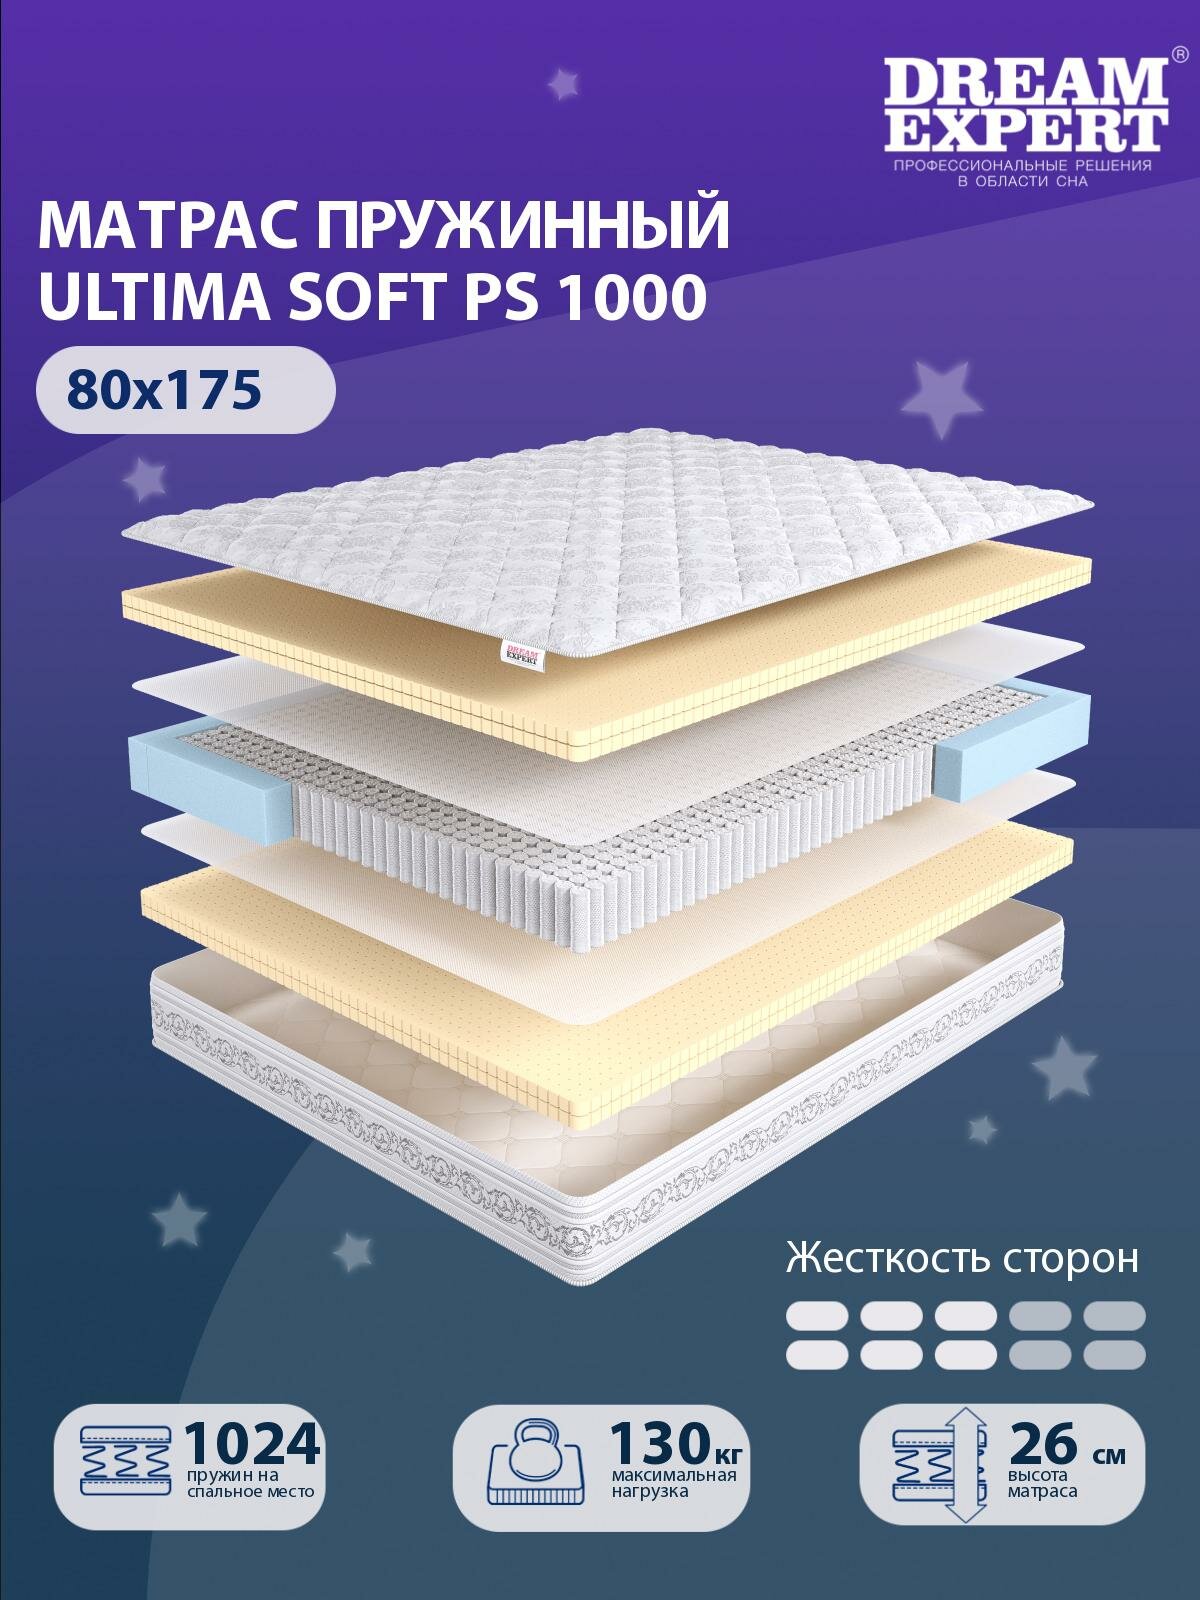 Матрас DreamExpert Ultima Soft PS1000 средней жесткости, односпальный, независимый пружинный блок, на кровать 80x175